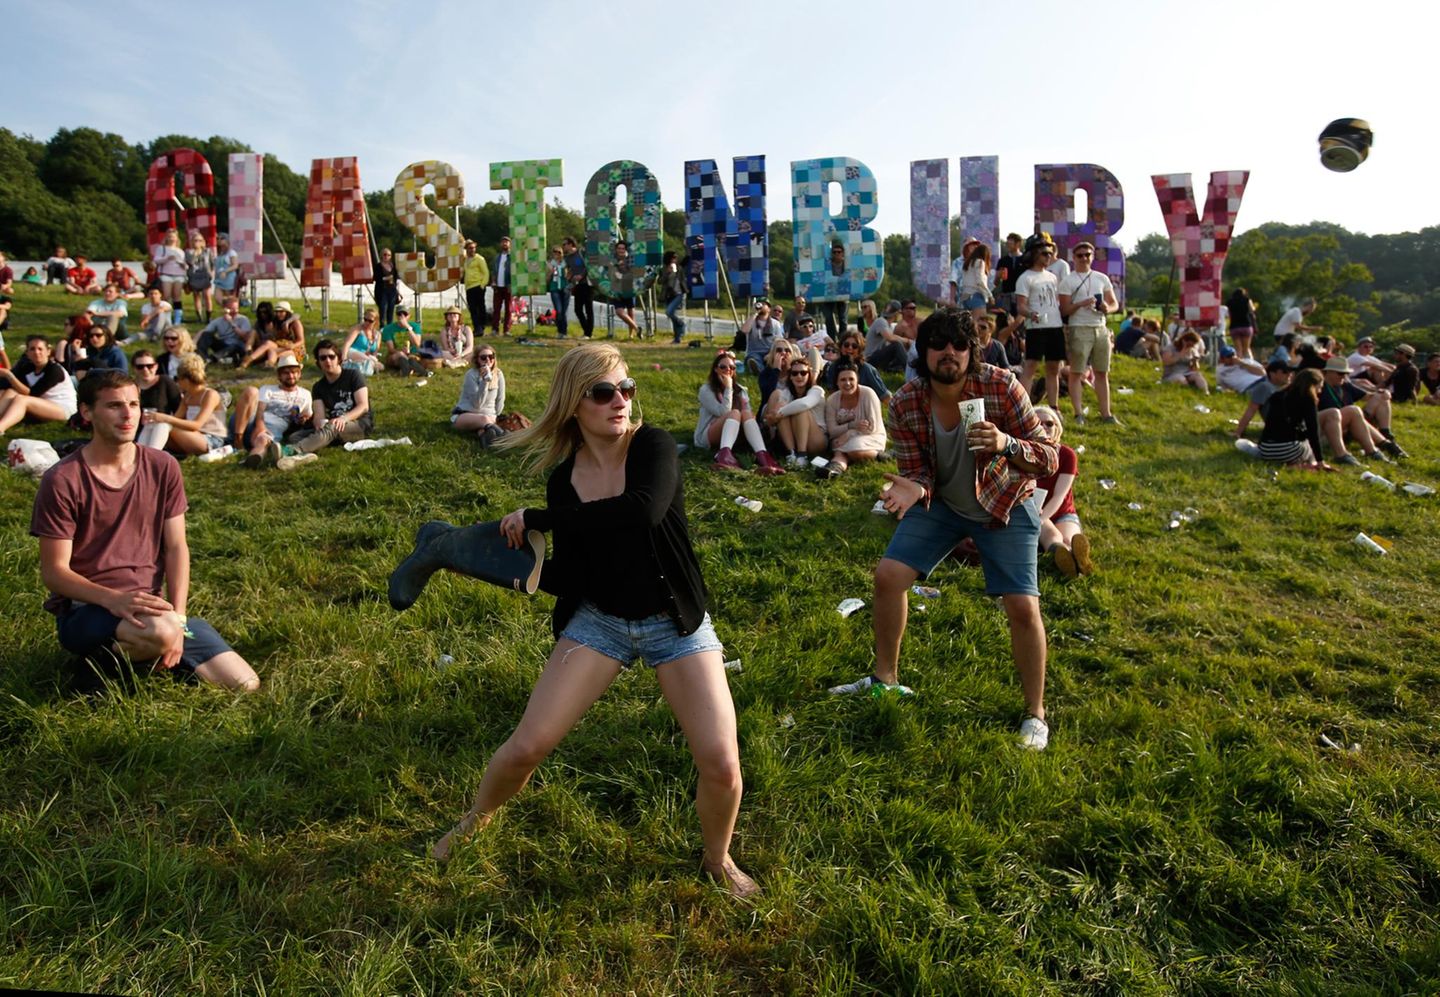 Theater, Tanz, Comedy und natürlich Musik: Das "Glastonbury Festival of Contemporary Performing Arts" in England vereint verschiedene Kunstrichtungen. Tausende Besucher feiern hier jedes Jahr unter freiem Himmel